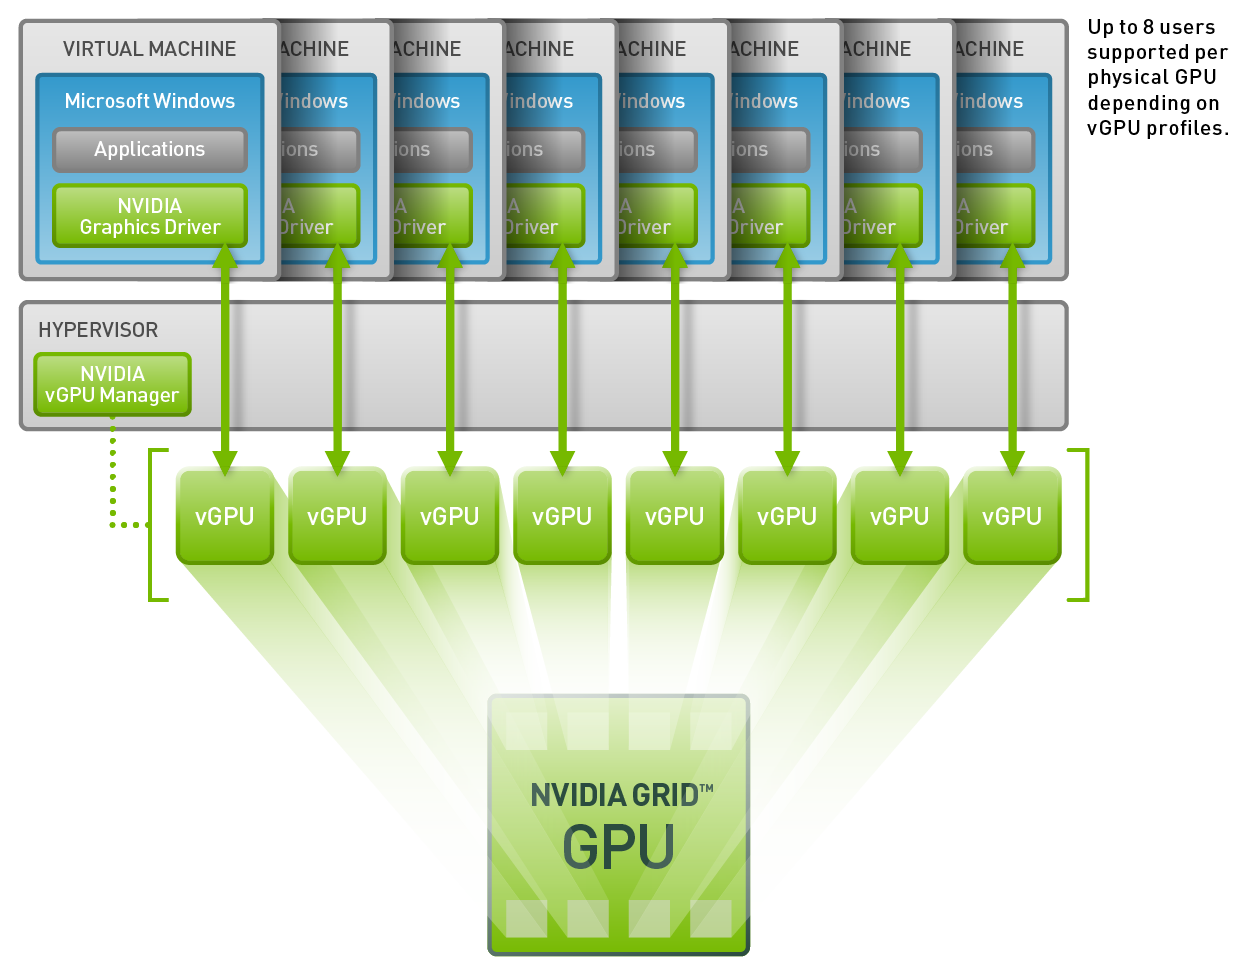 Virtual machine user. NVIDIA Grid. NVIDIA виртуальная машина. NVIDIA Grid GPU. Виртуализация процессора.